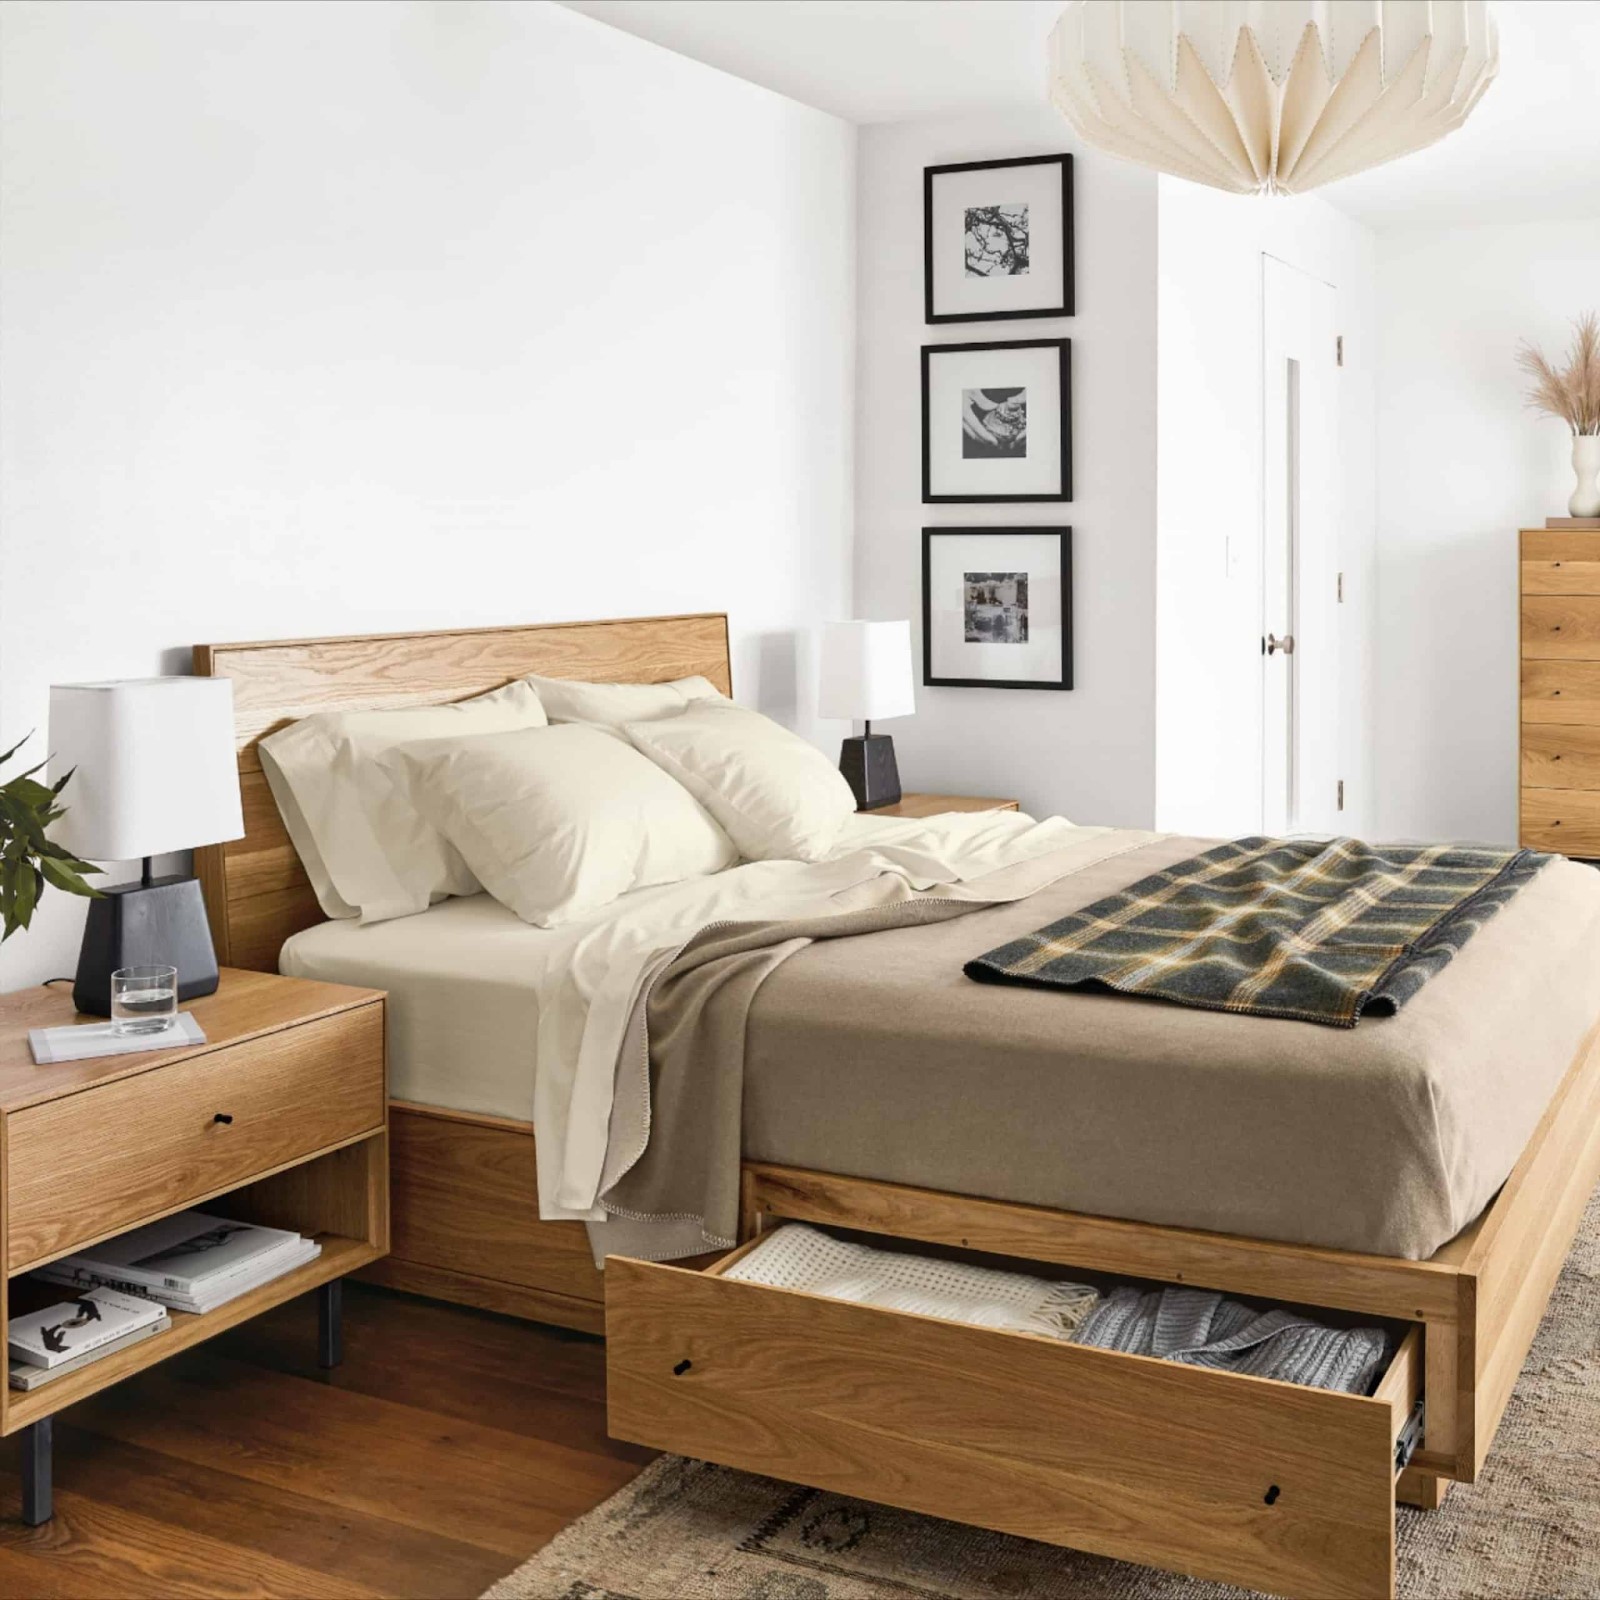 Mẫu giường gỗ đẹp đơn giản hiện đại, mẫu giường gỗ hiện đại